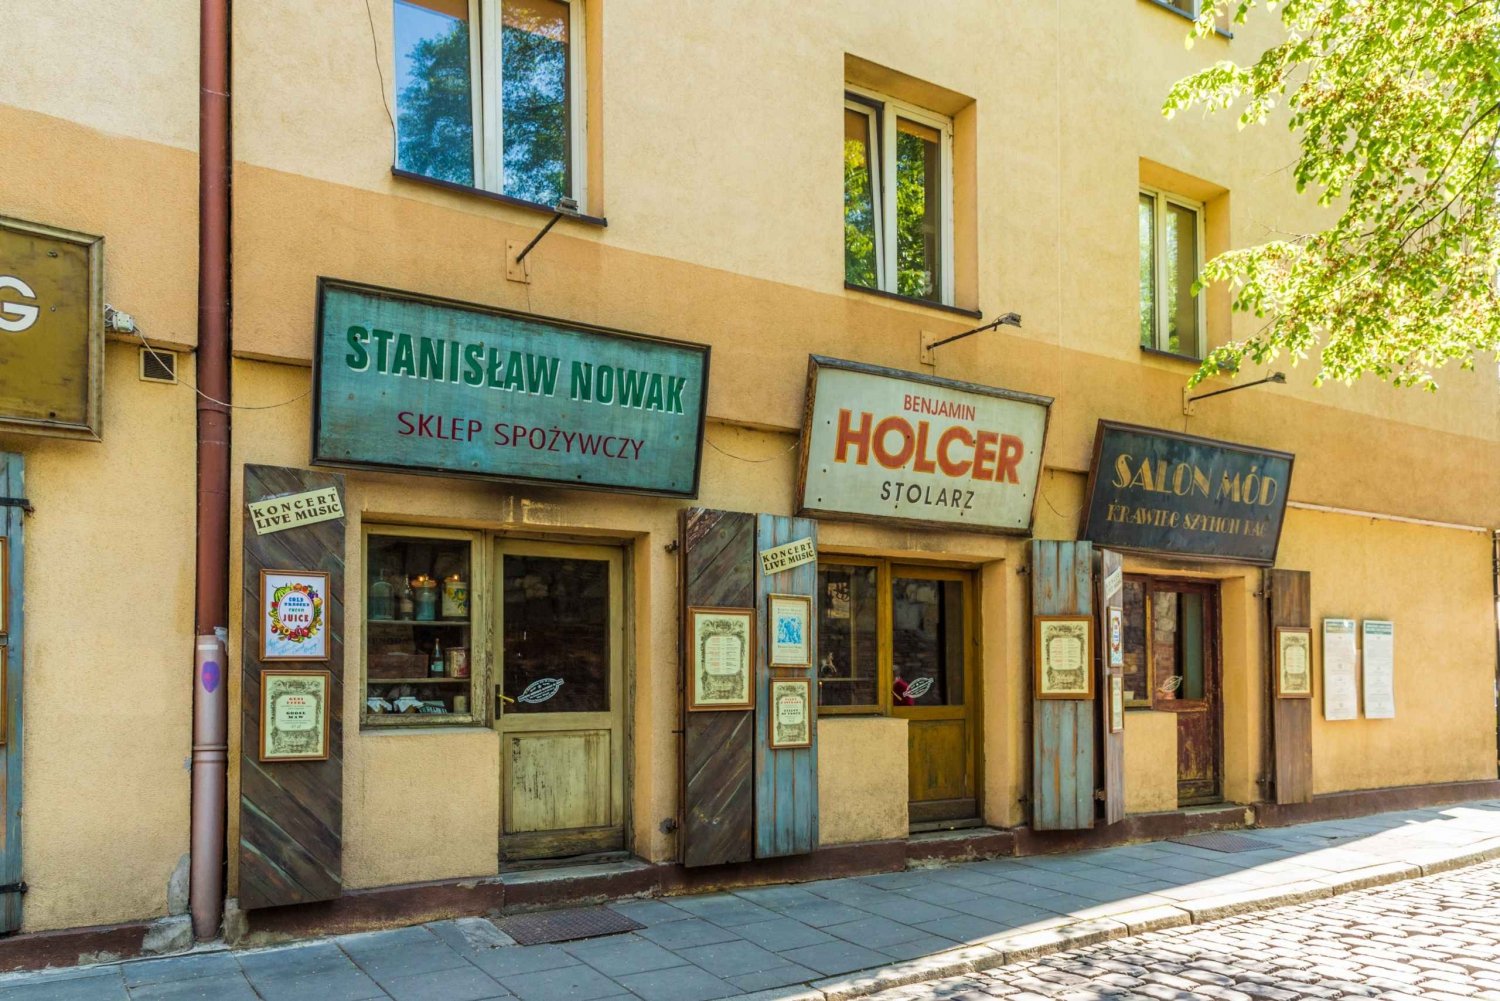 Cracovia: tour guidato a piedi del quartiere ebraico di Kazimierz